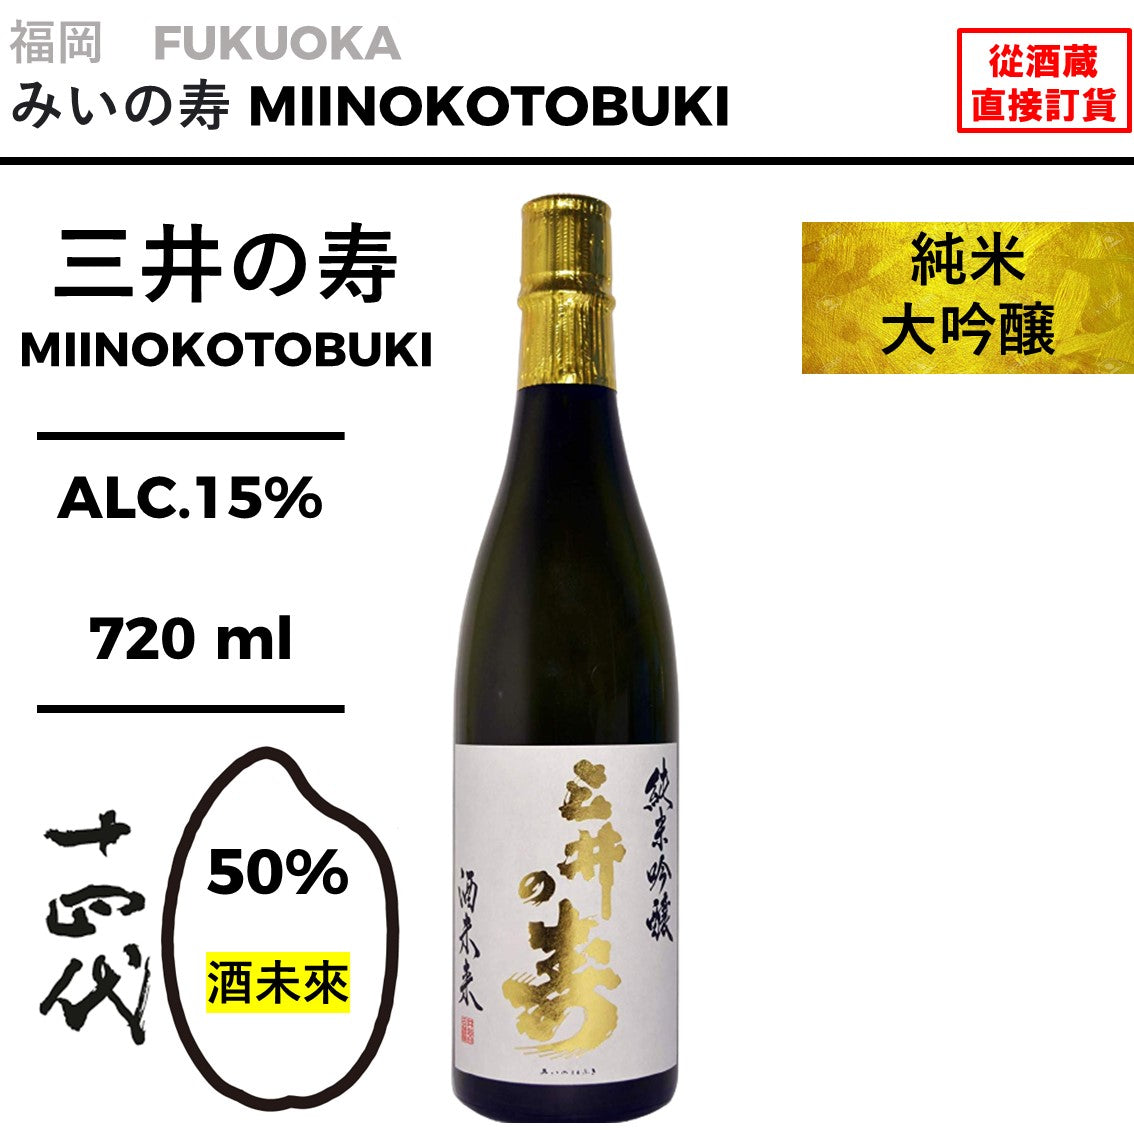 三井之壽純米大吟醸酒未來– 酒之和   日本清酒網上專賣店